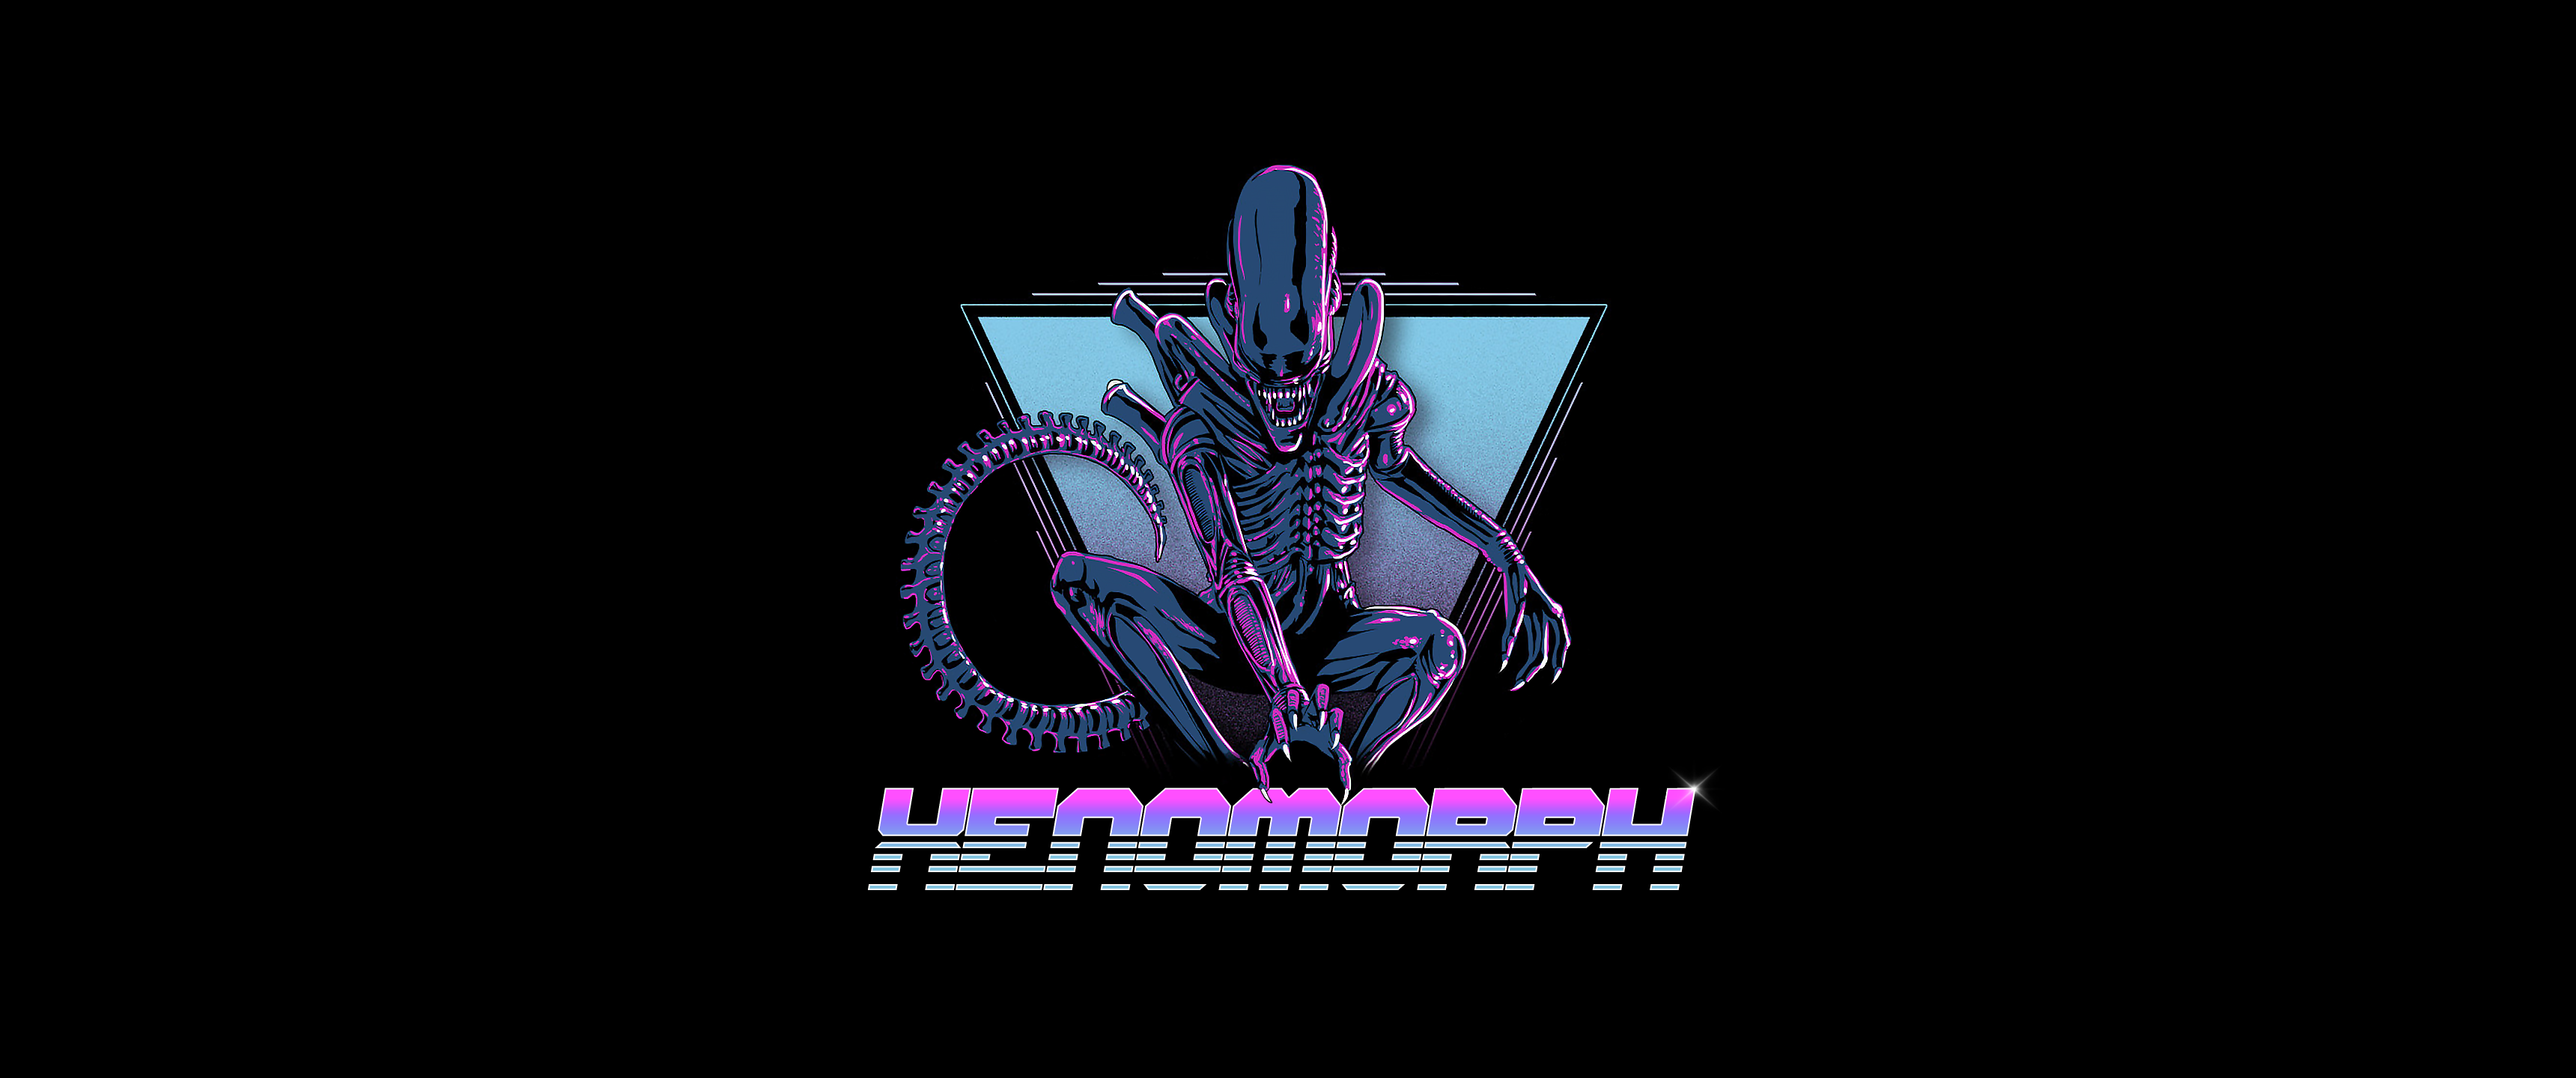 Xenomorph Alien Ultrawide outrun Wallpapers 3440x1440 : outrun.